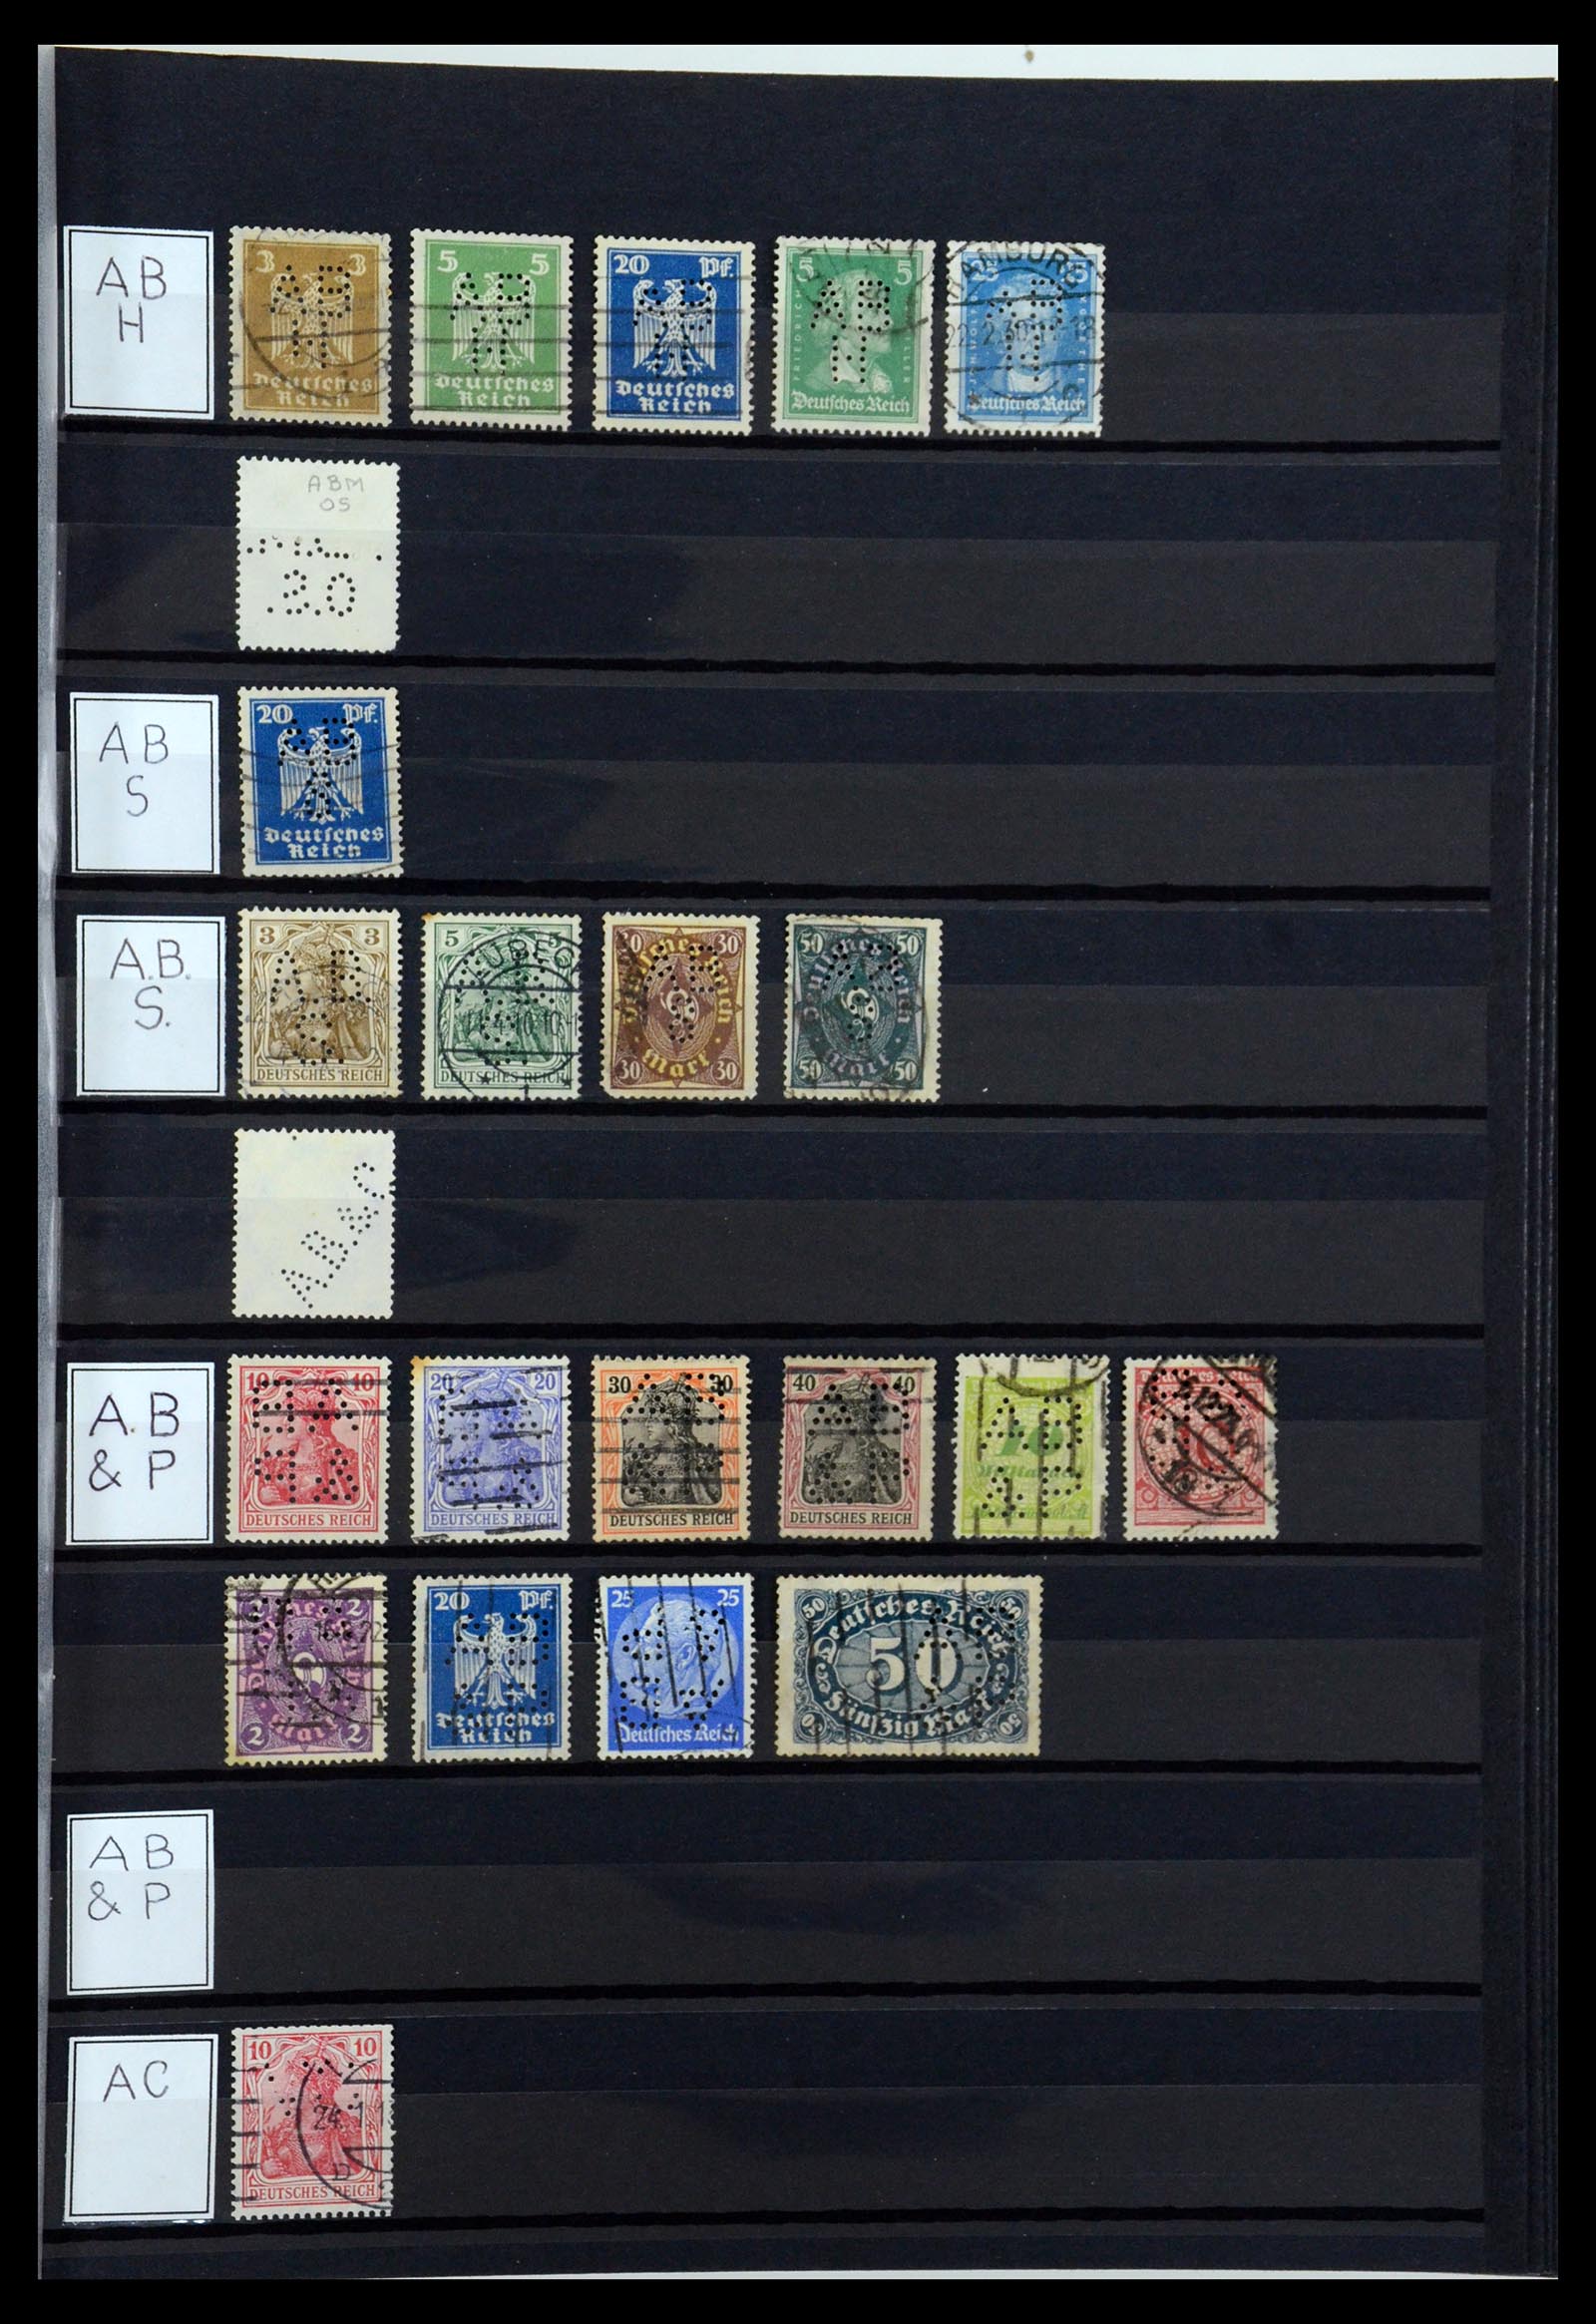 36405 005 - Stamp collection 36405 German Reich perfins 1880-1945.